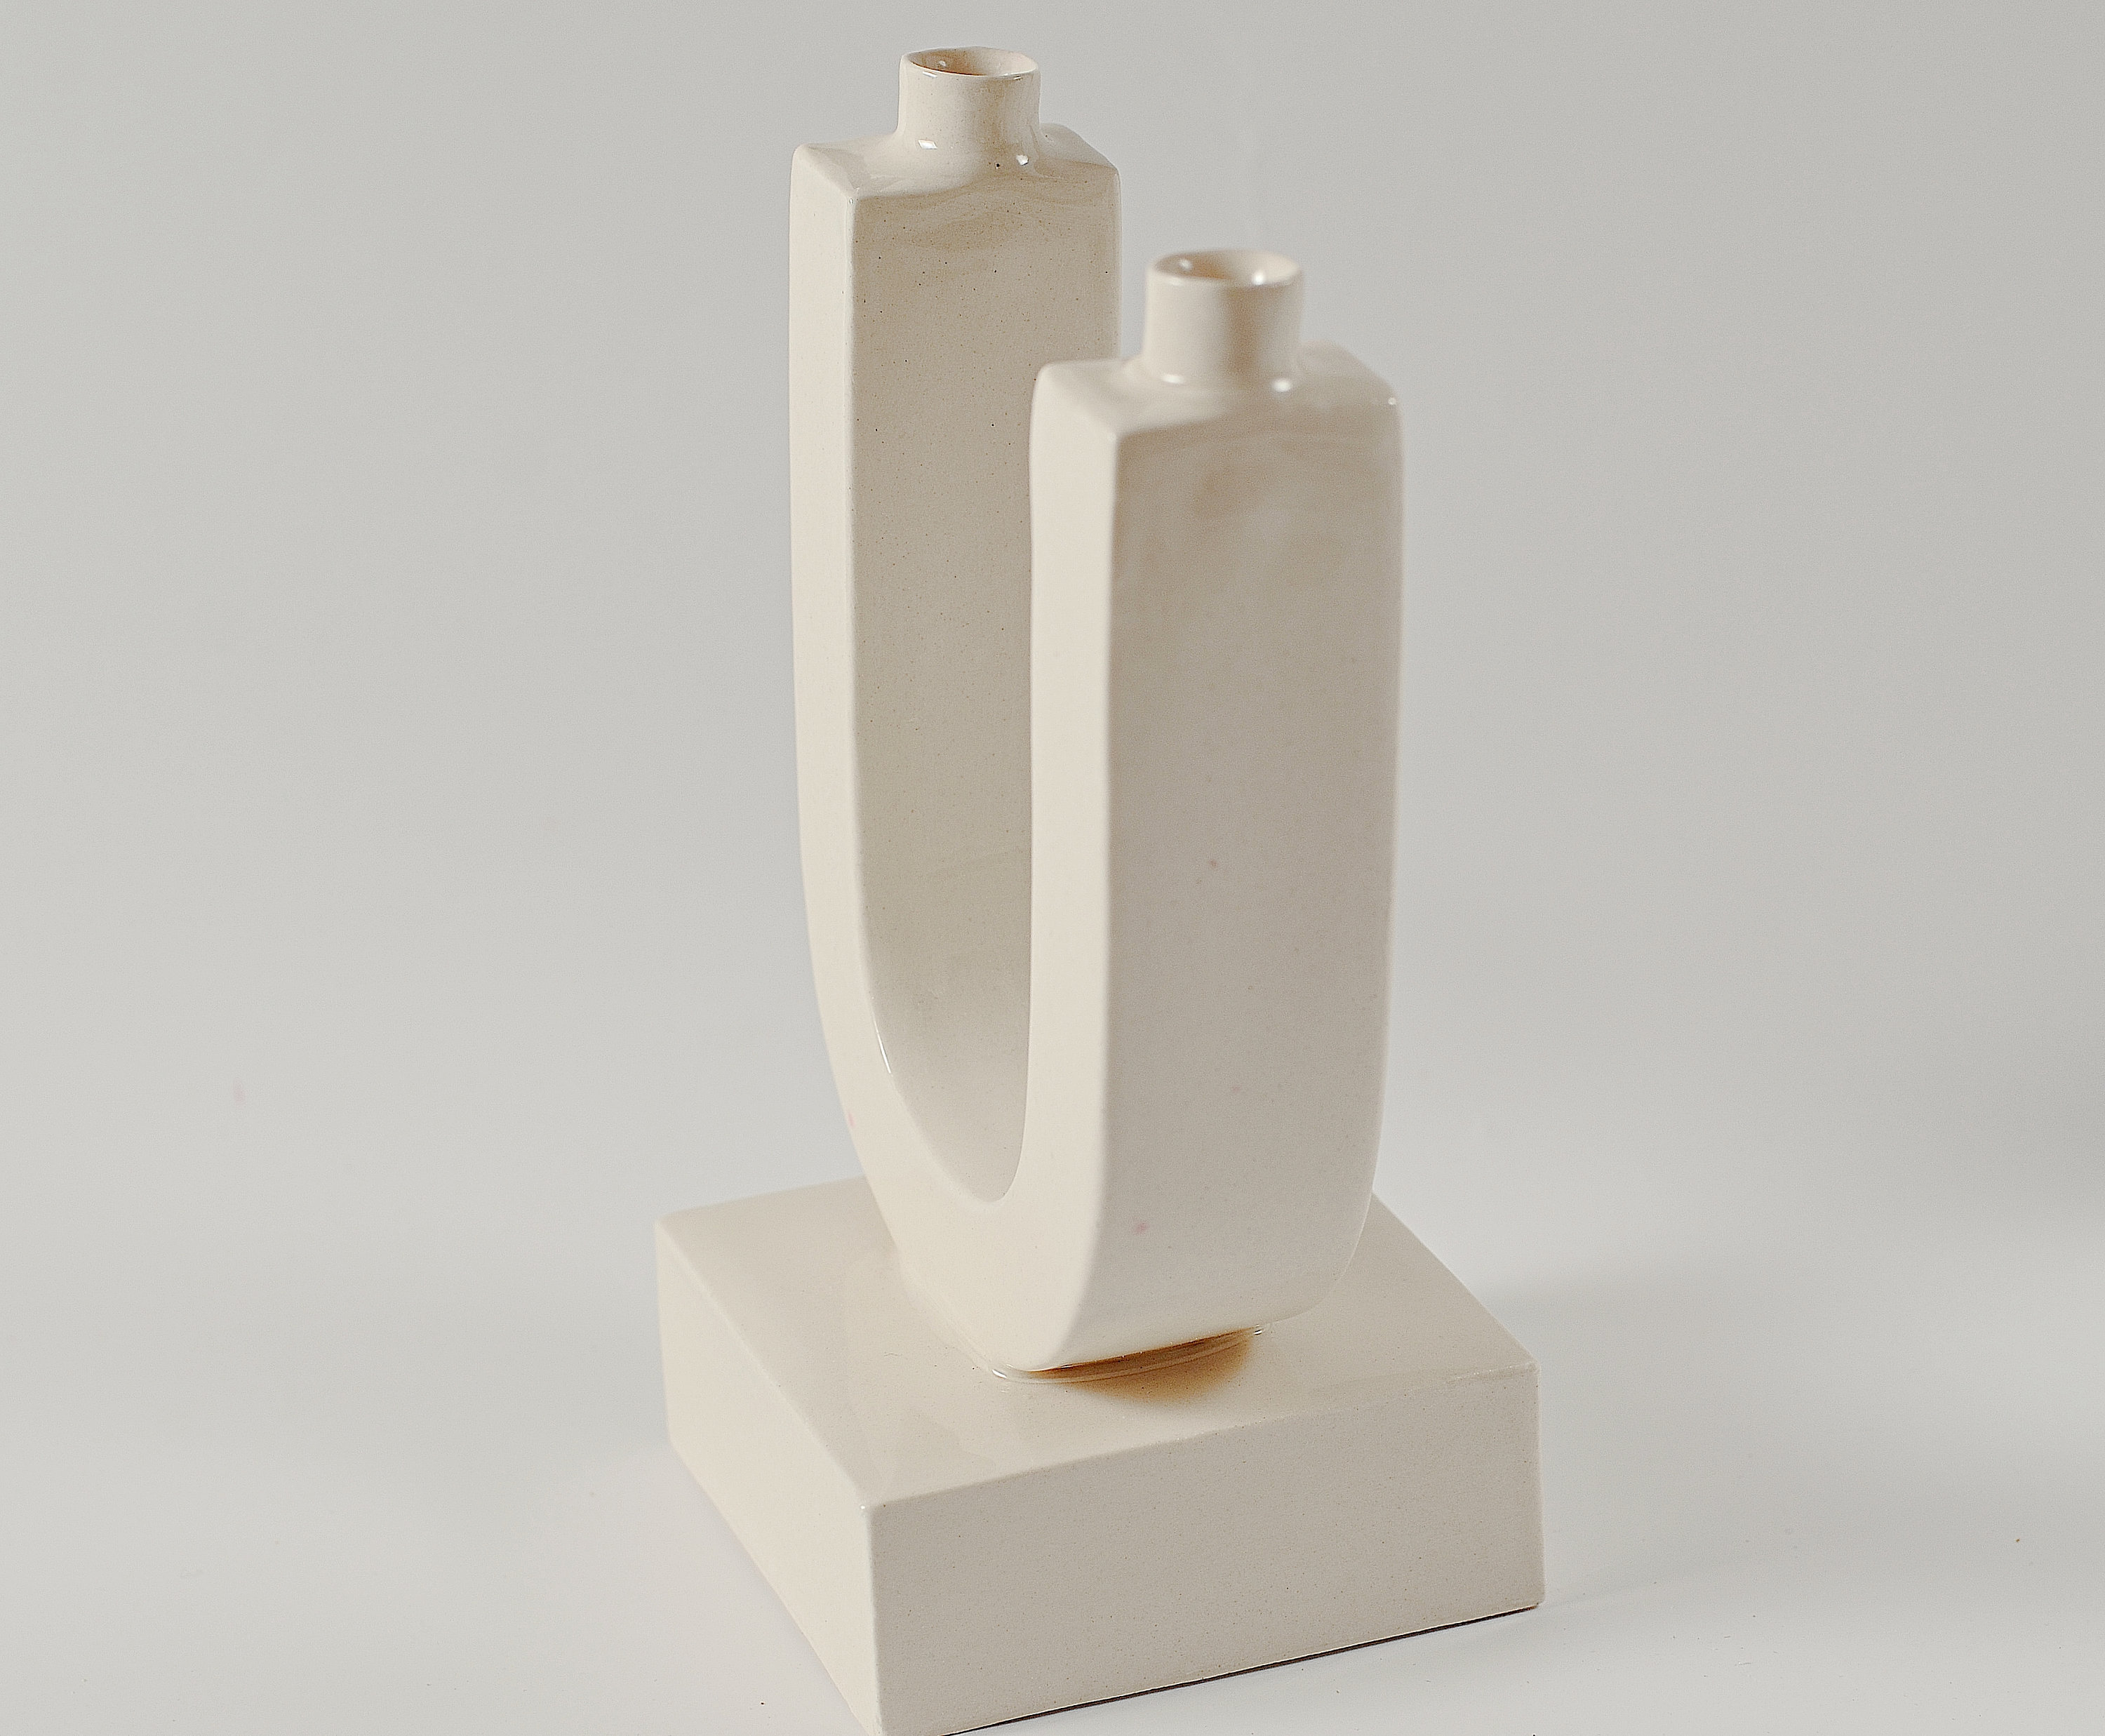 Ceramic candle holder White modern double candlestick Minimalist style candleholder